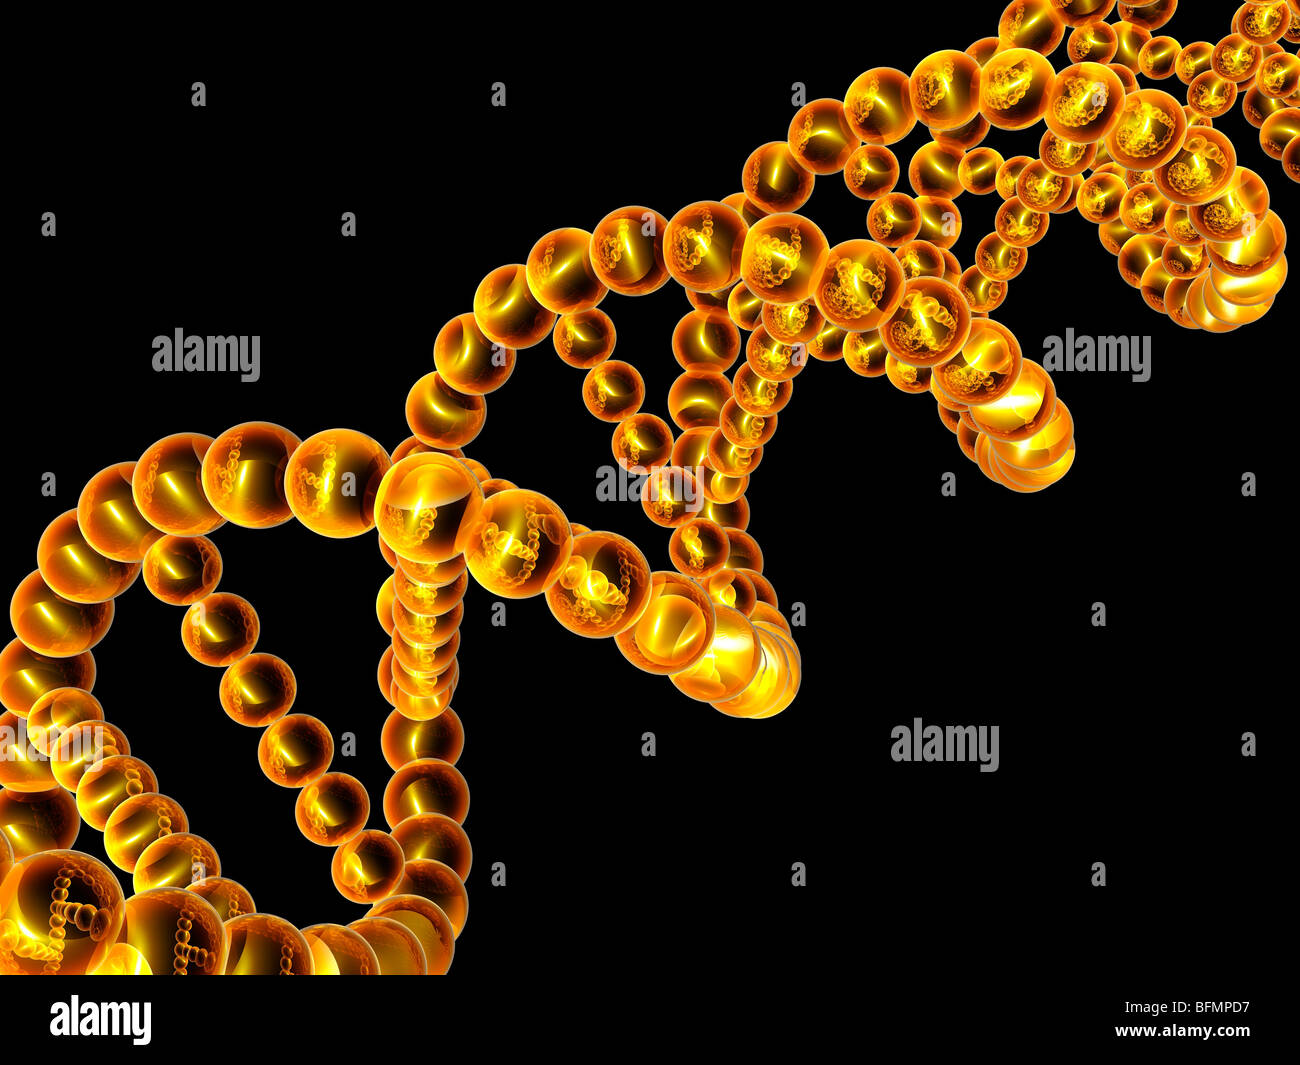 DNA molecule, artwork Stock Photo